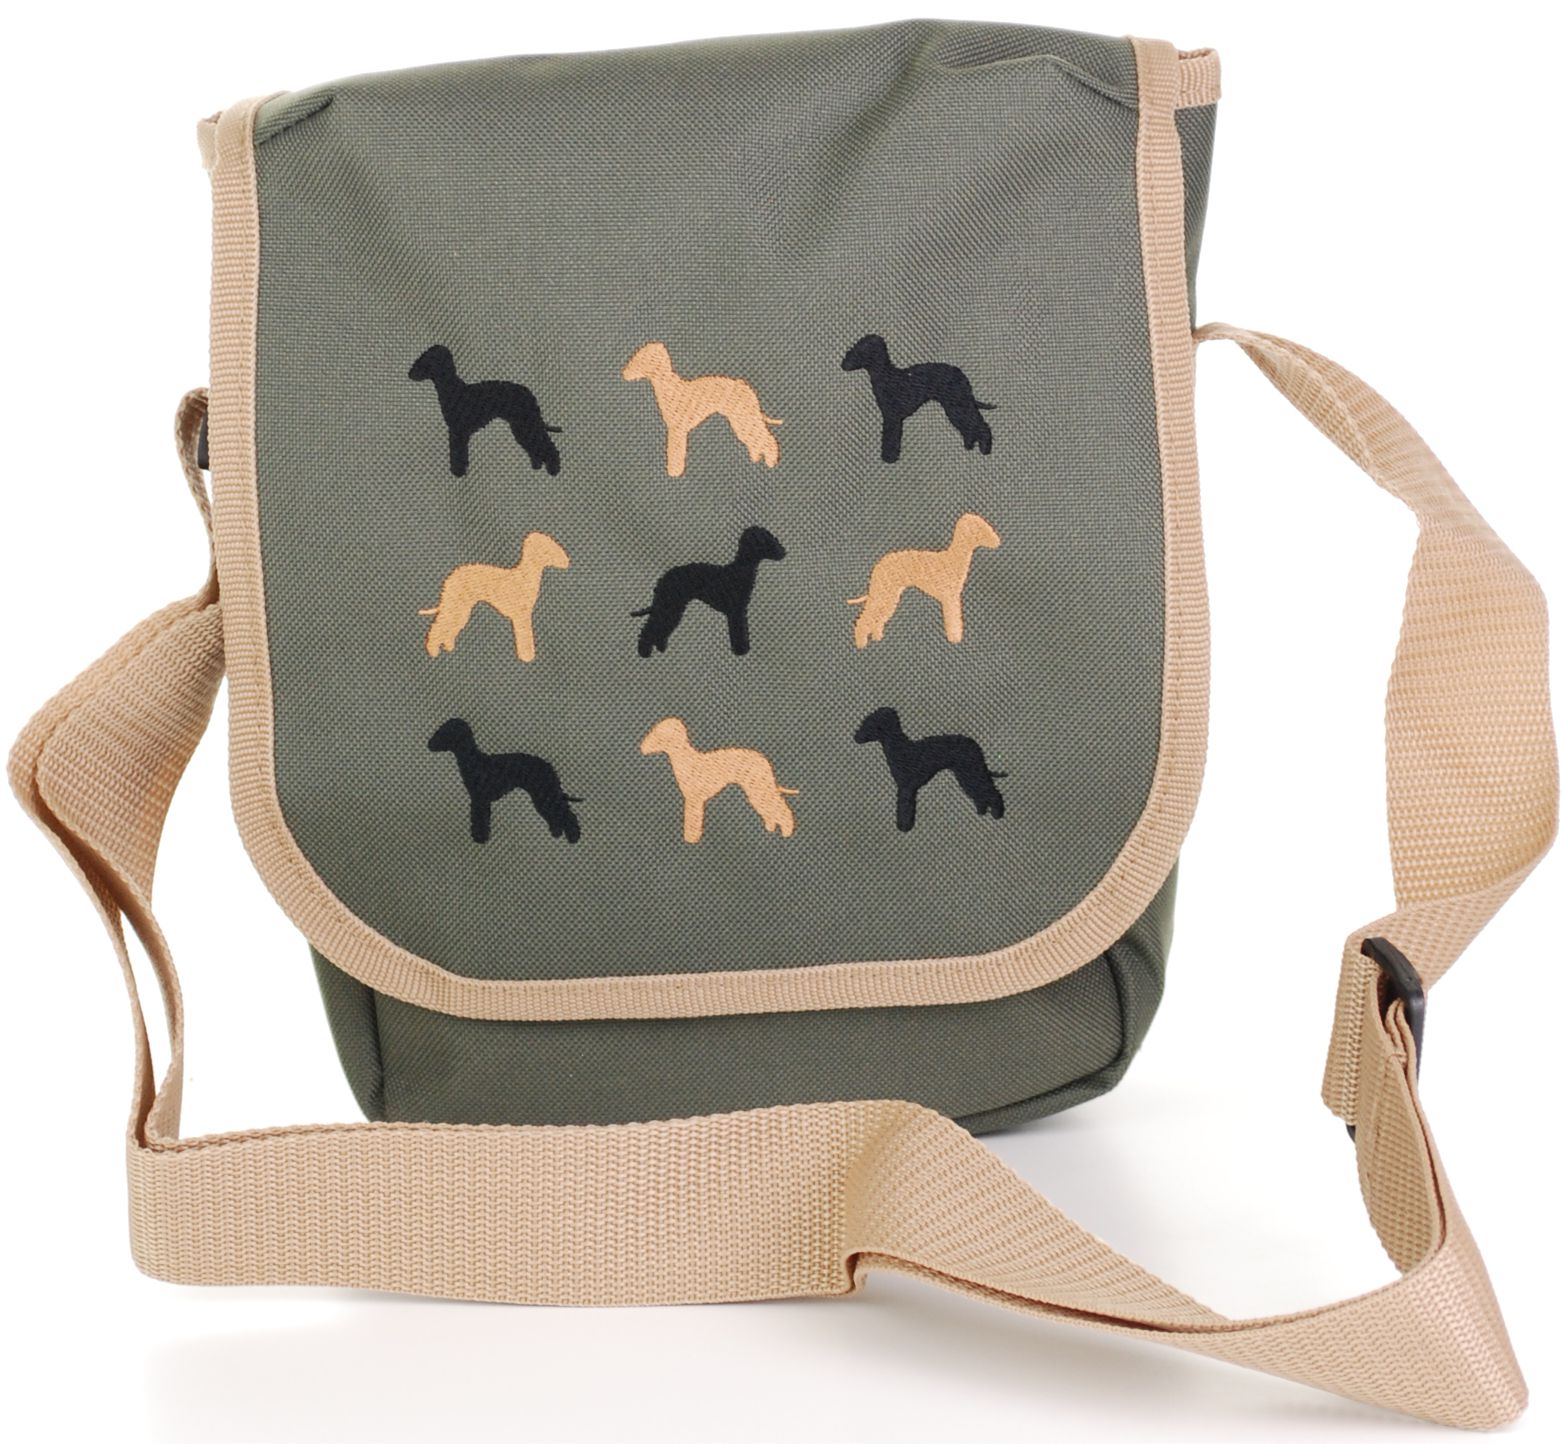 Bedlington Terrier embroidered cross body bag